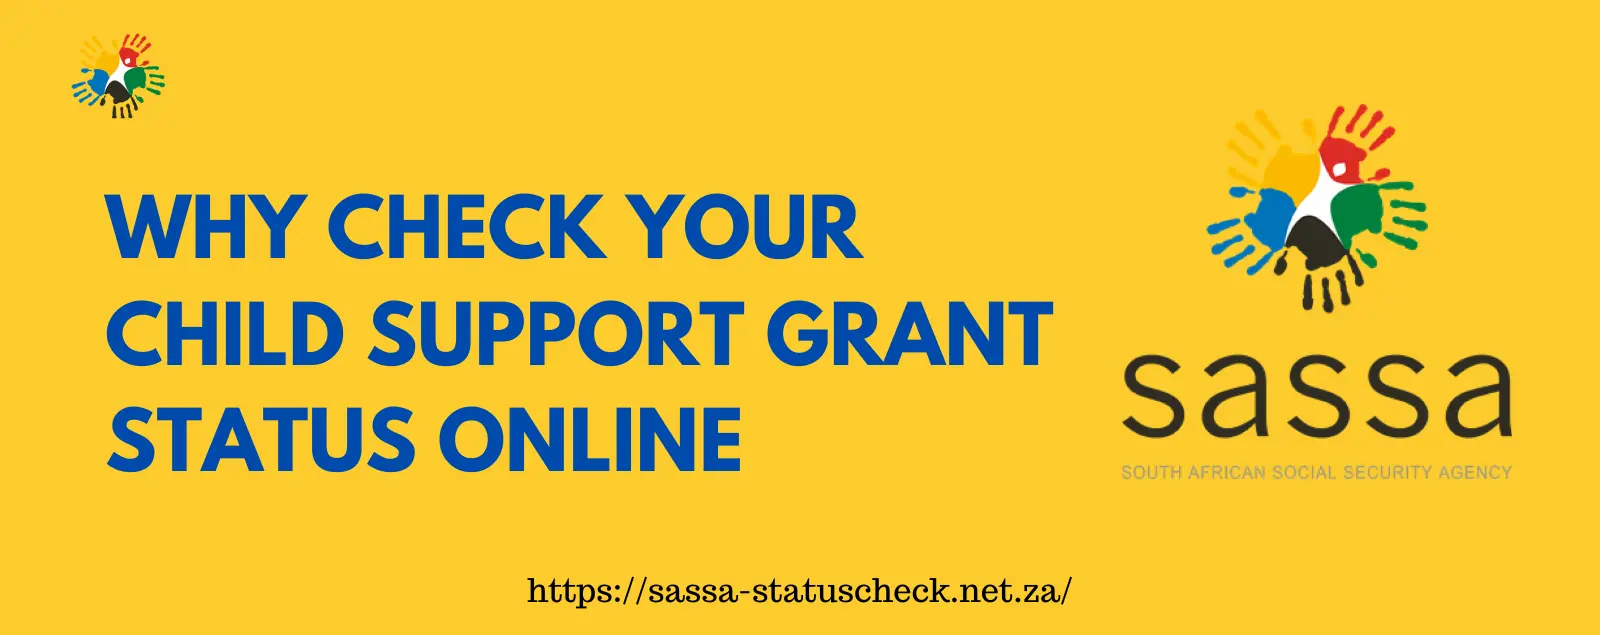 SASSA Child Support Grant